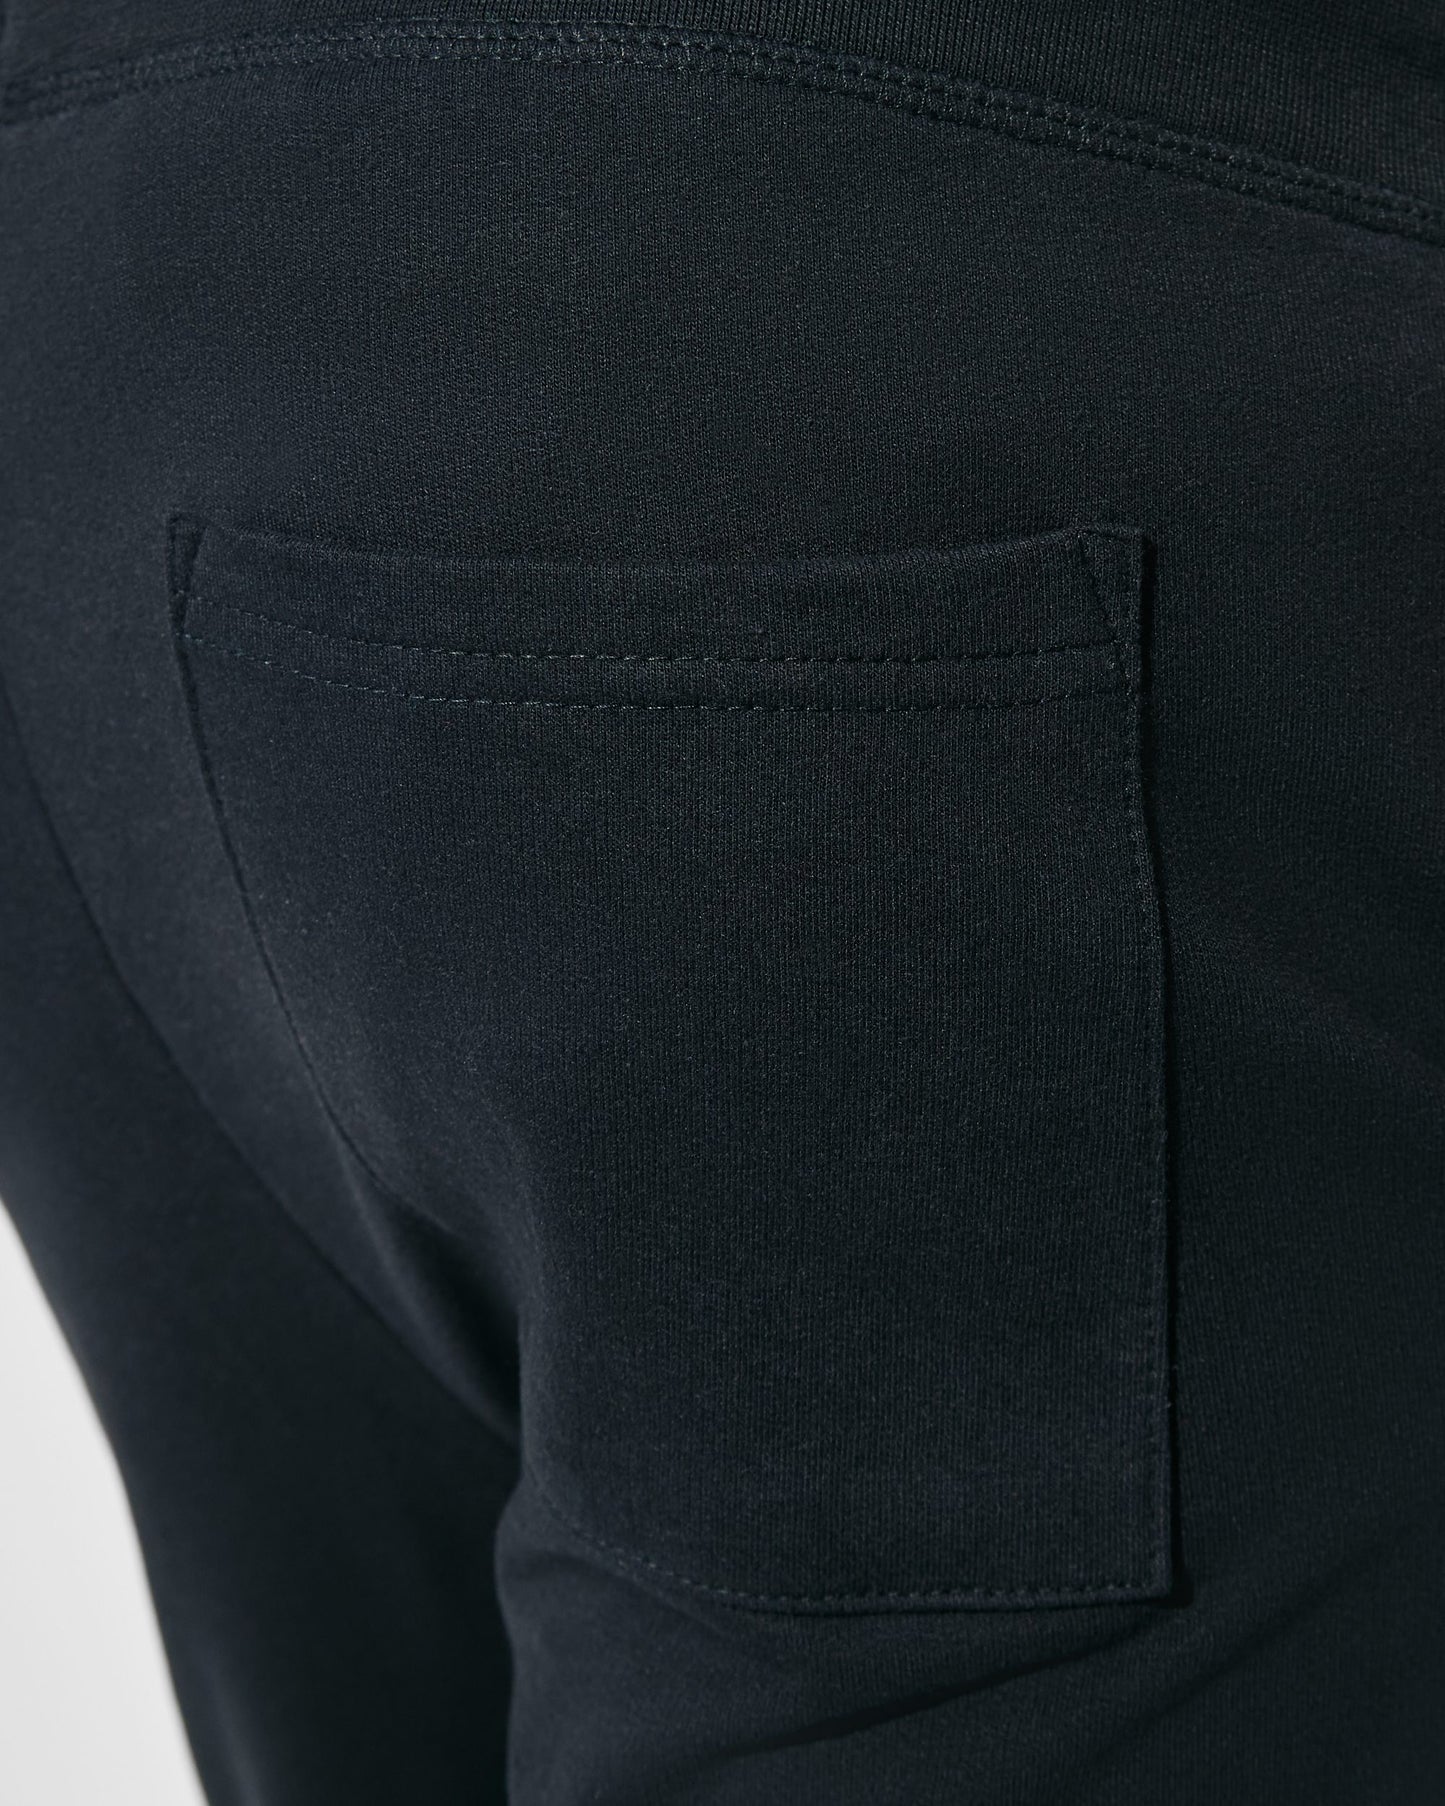 Pantalón corto deportivo con cinturilla elástica hombre - Spiro